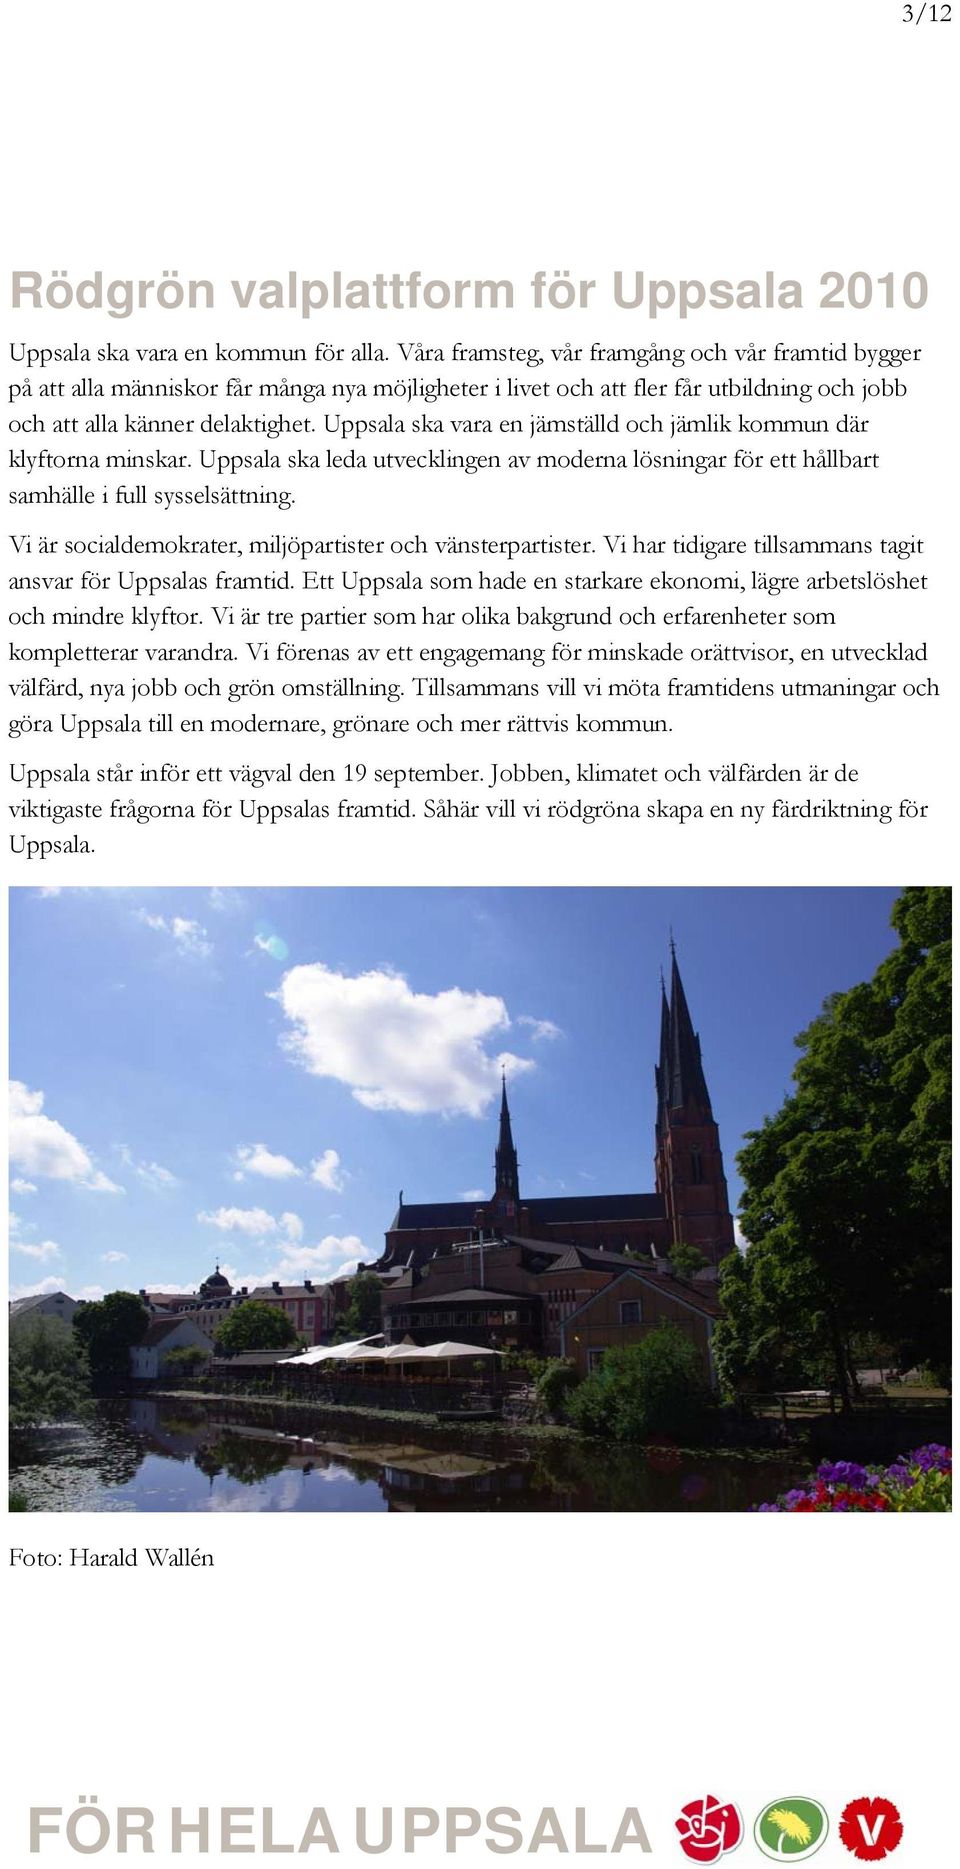 Uppsala ska vara en jämställd och jämlik kommun där klyftorna minskar. Uppsala ska leda utvecklingen av moderna lösningar för ett hållbart samhälle i full sysselsättning.